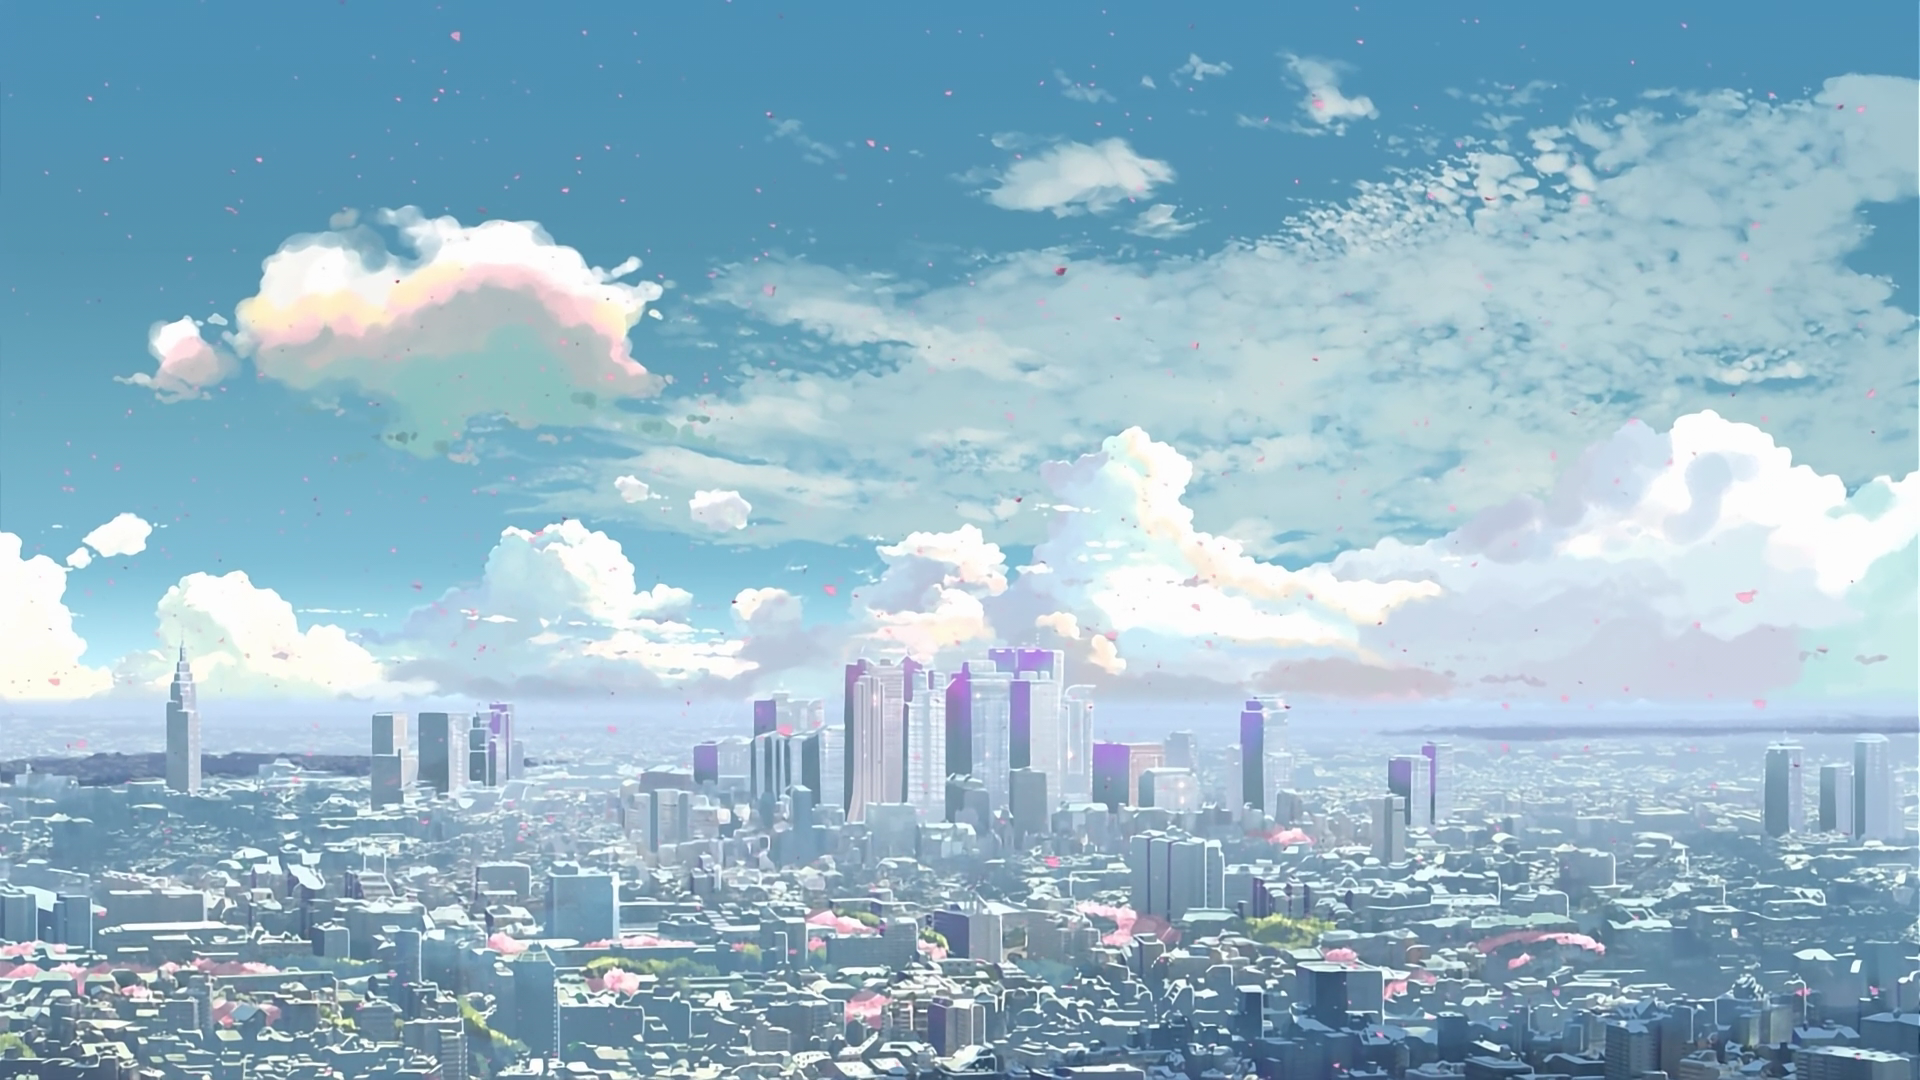 Anime 1920x1080 5 Centimeters Per Second cityscape city Makoto Shinkai  anime clouds skyscraper sky building